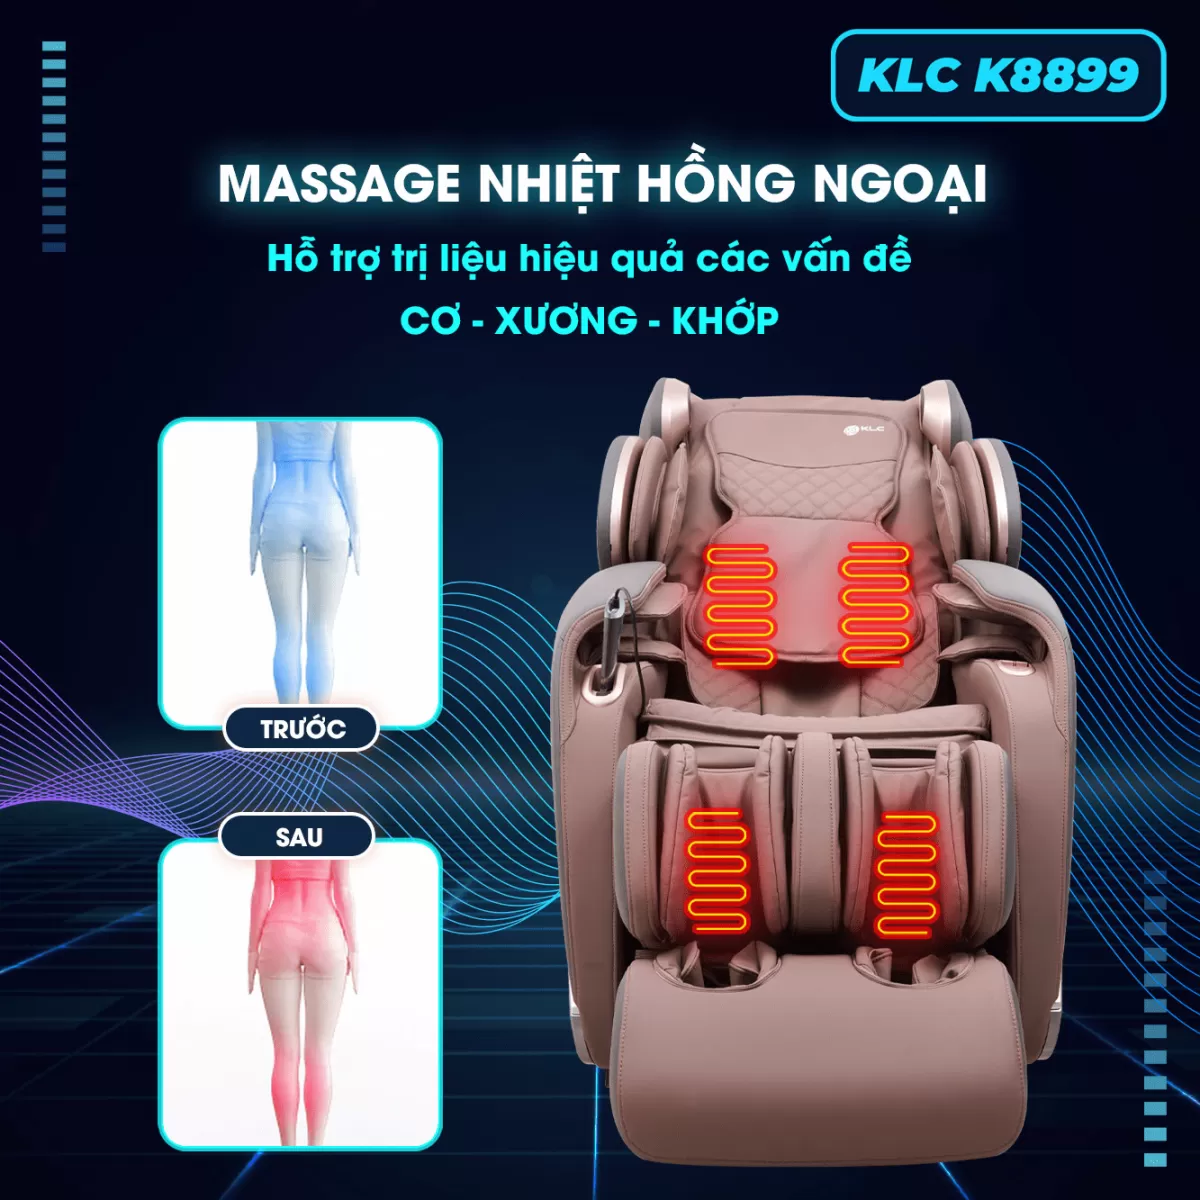 Nhiệt hồng ngoại của Ghế Massage KLC K8899